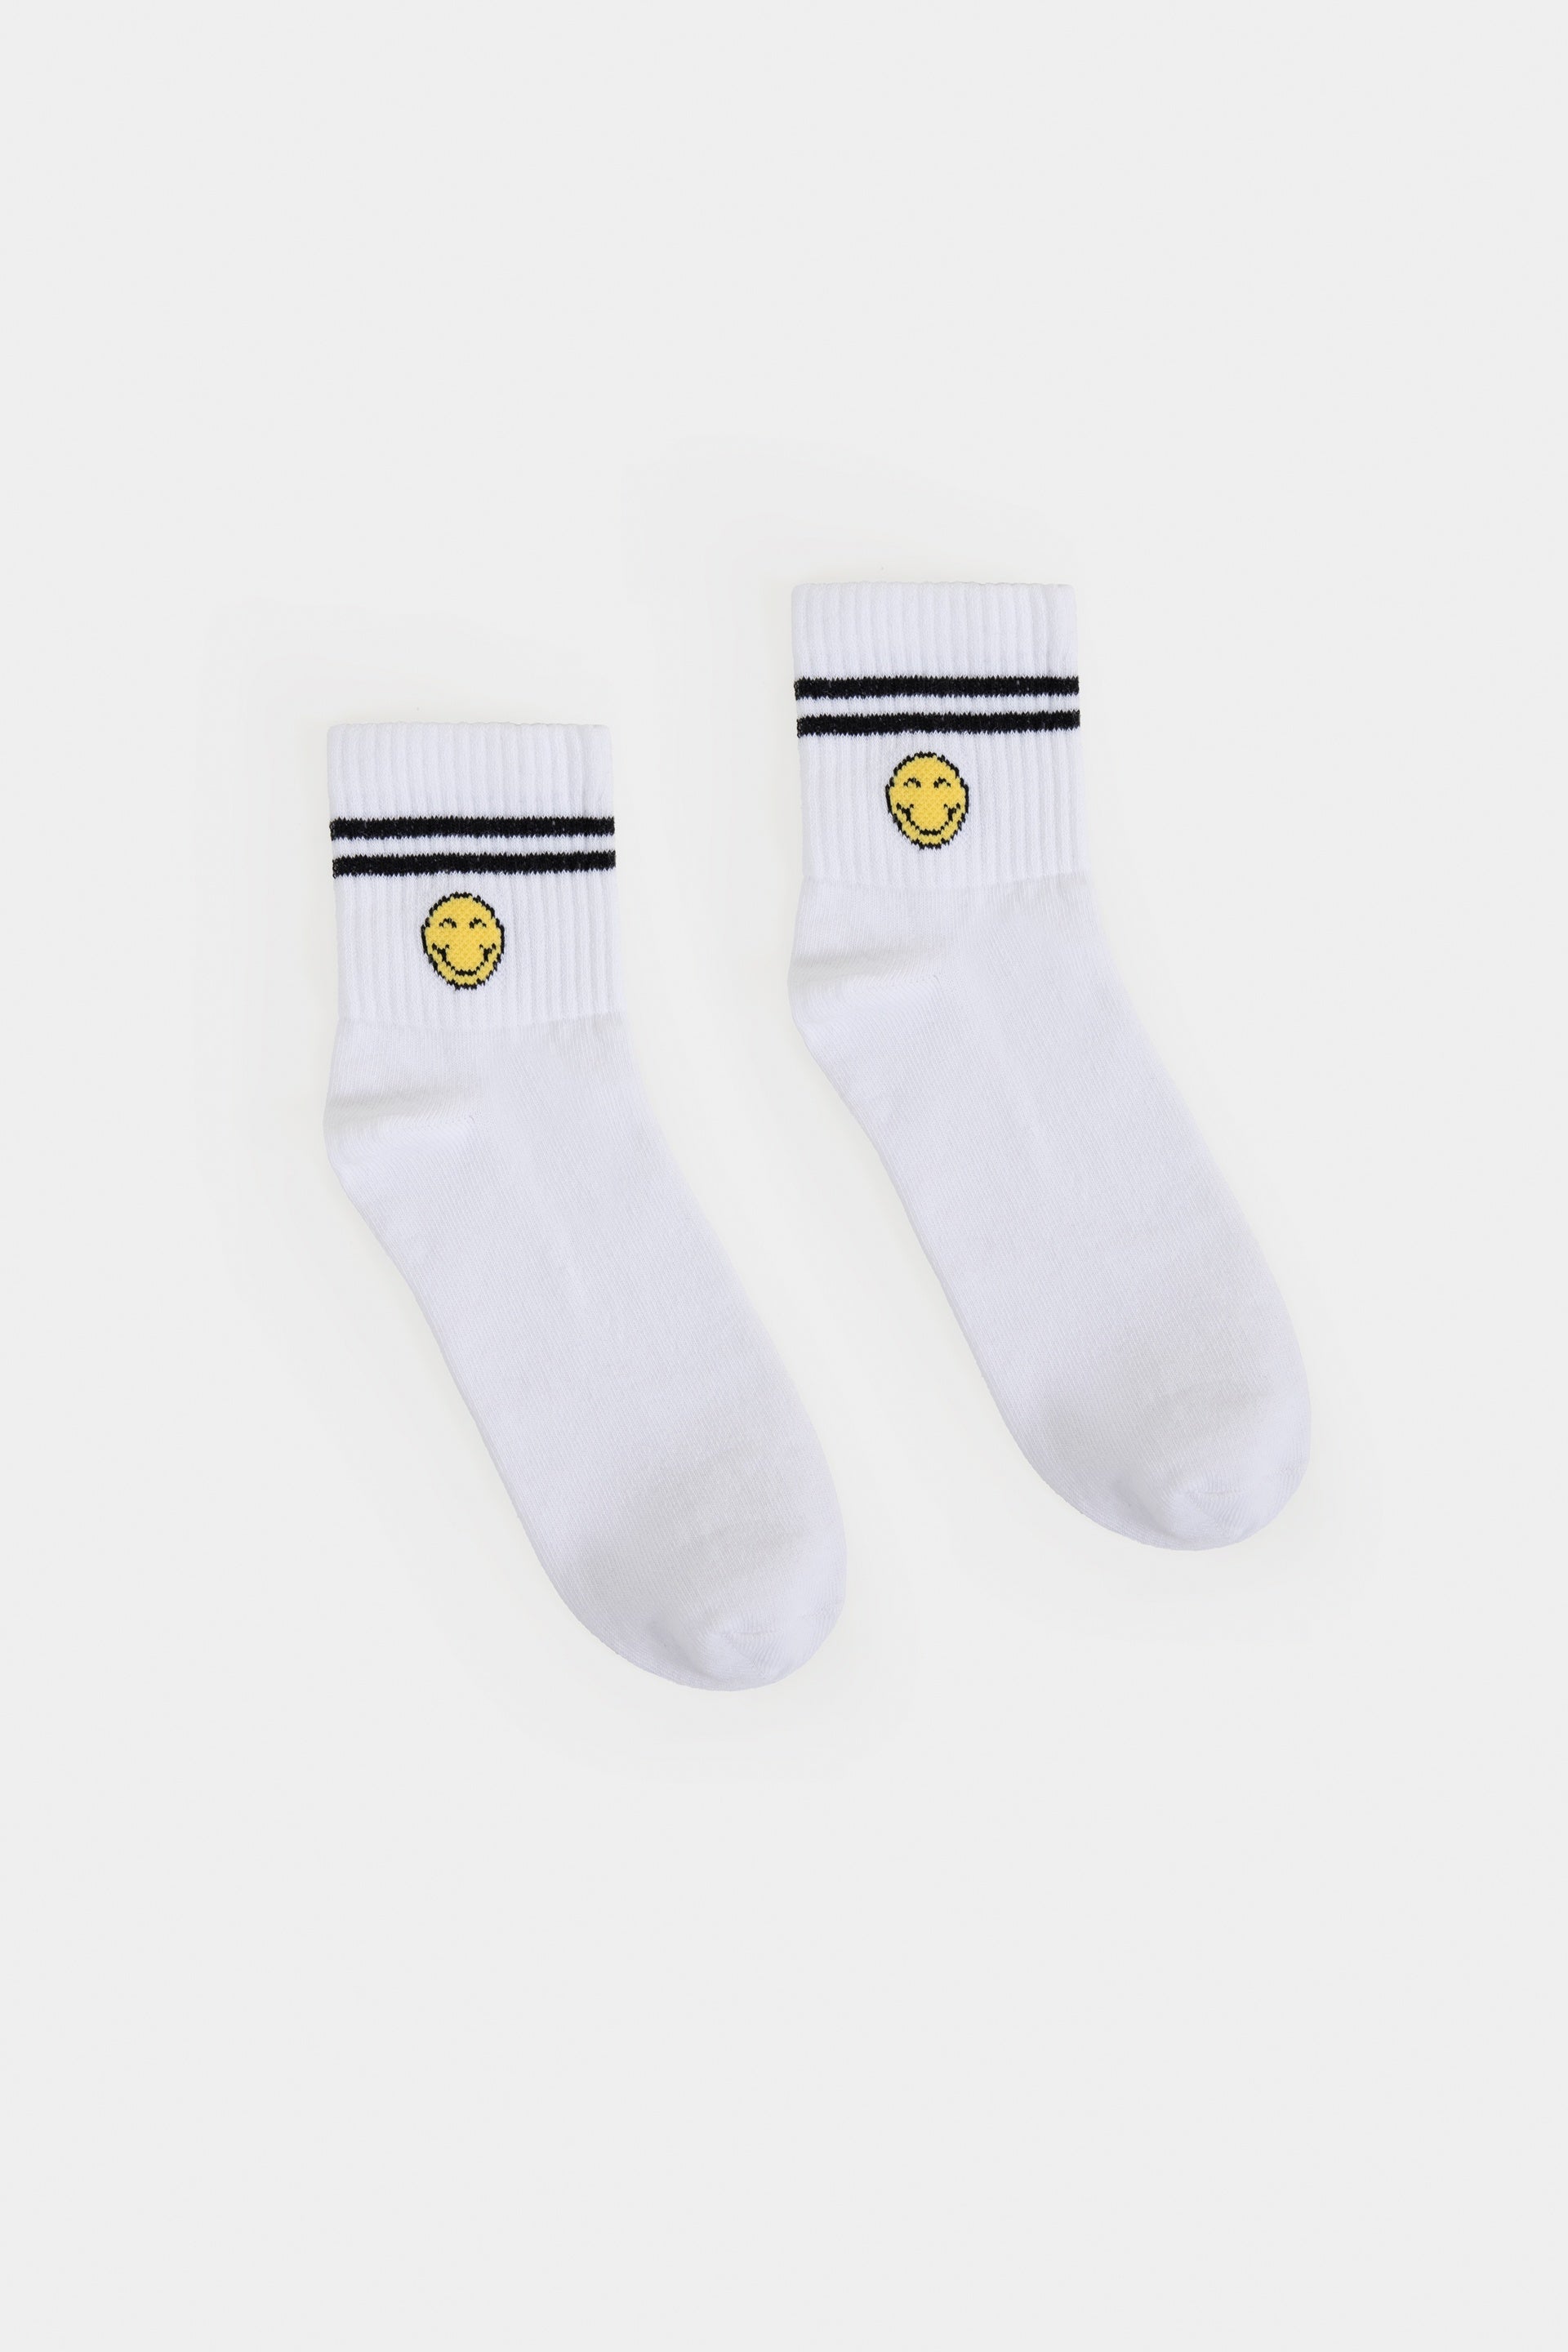 Smiley Pack of 3 Socks